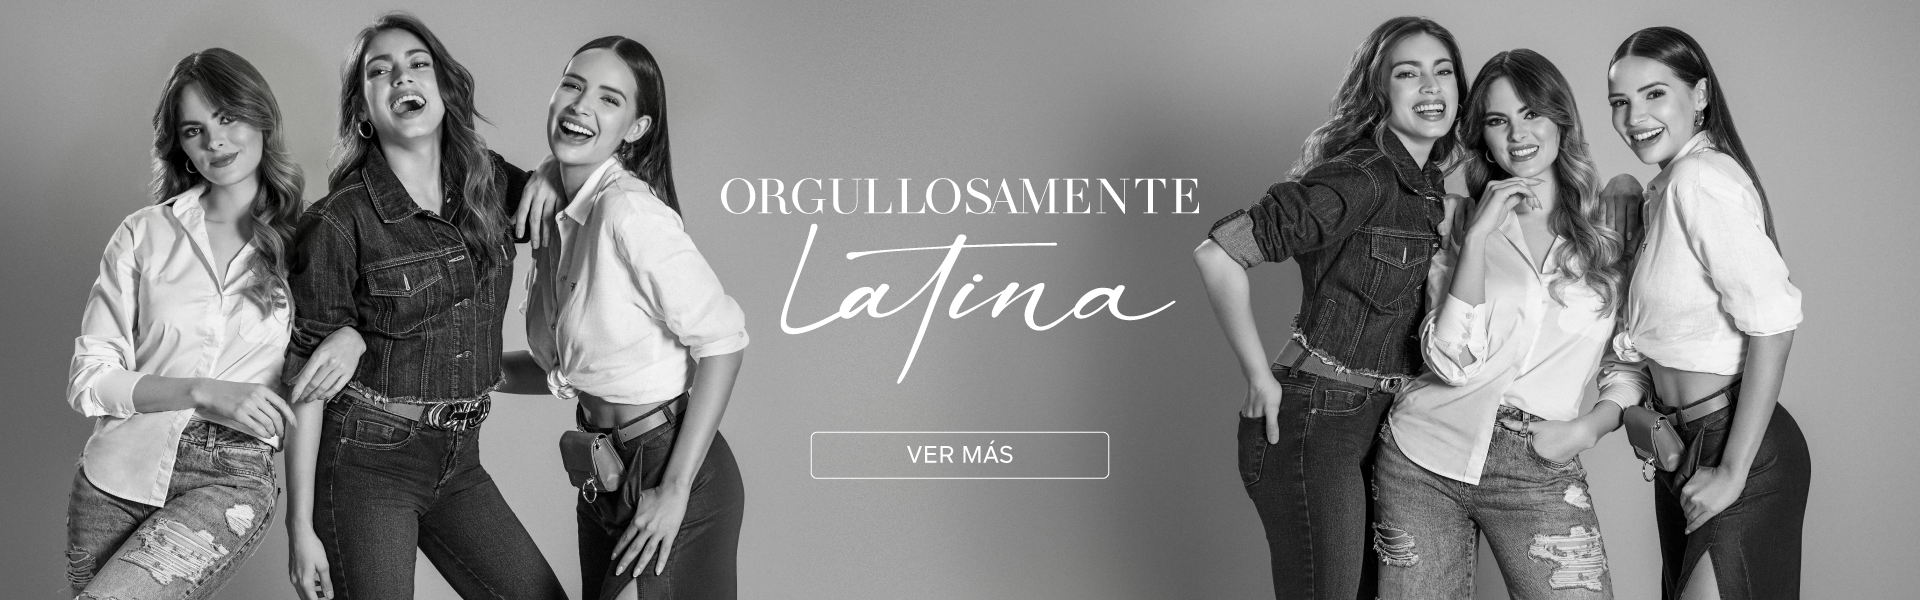 Foto en blanco y negro de Sofía Aragón, Laura Archbold y Sheldry Saéz con chamarras y blusas blancas para la campaña orgullosamente latina Studio F